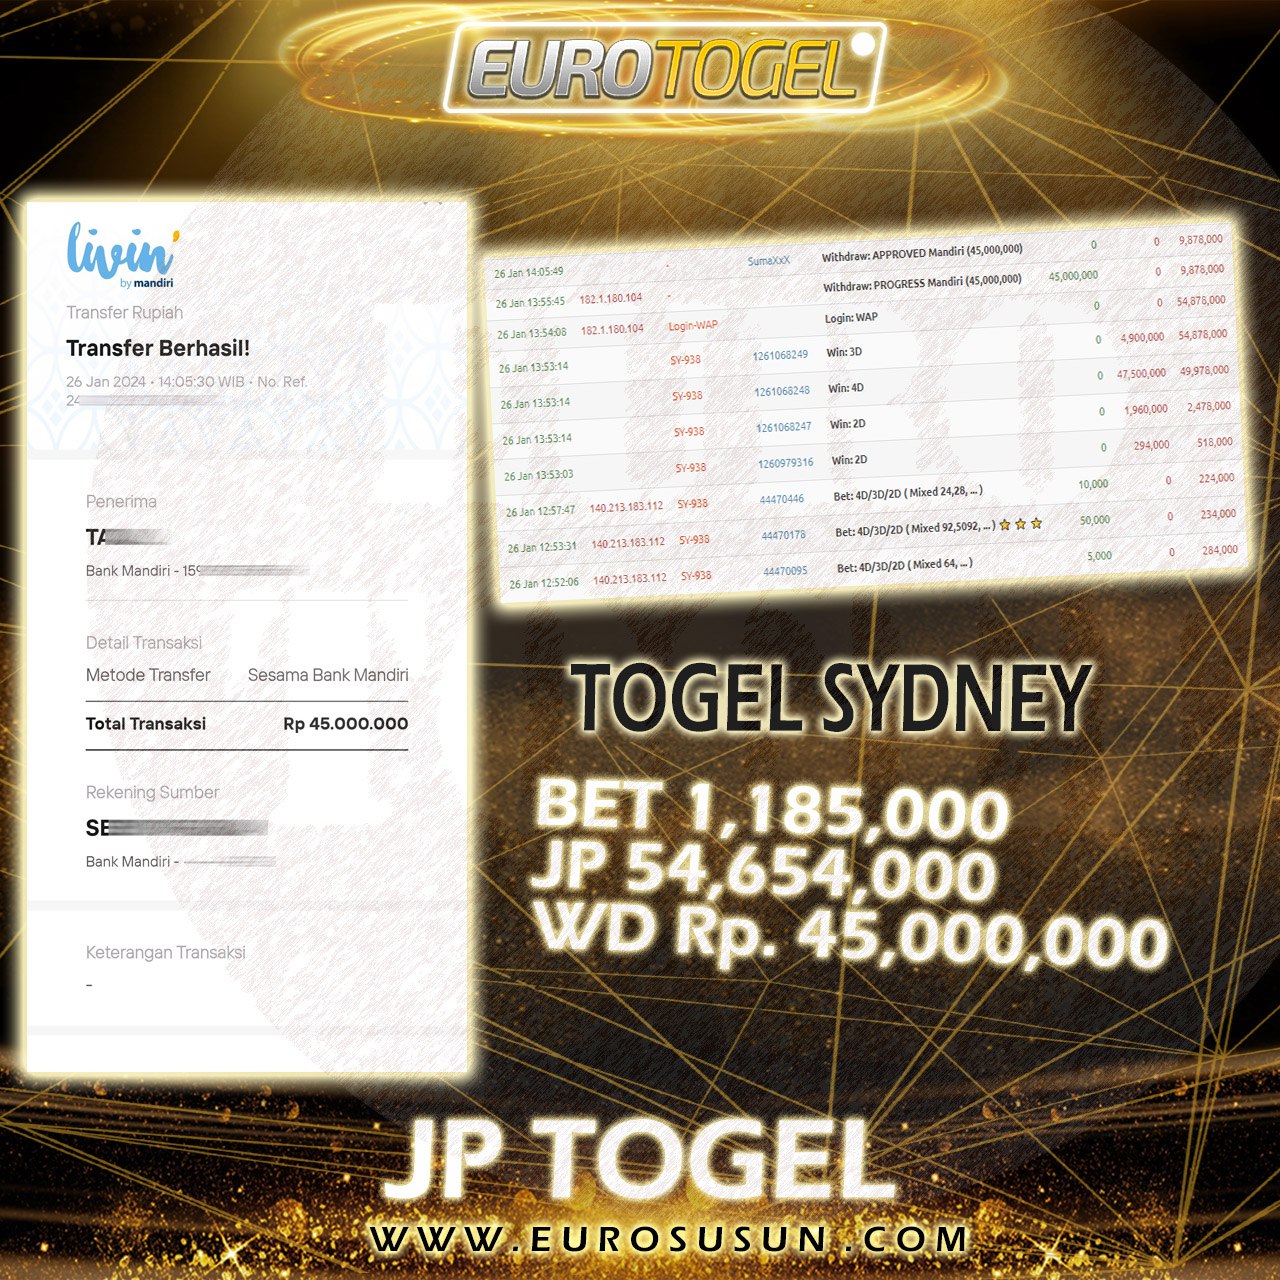 Jackpot Togel Sydney 26-Jan-2024 Member Eurotogel